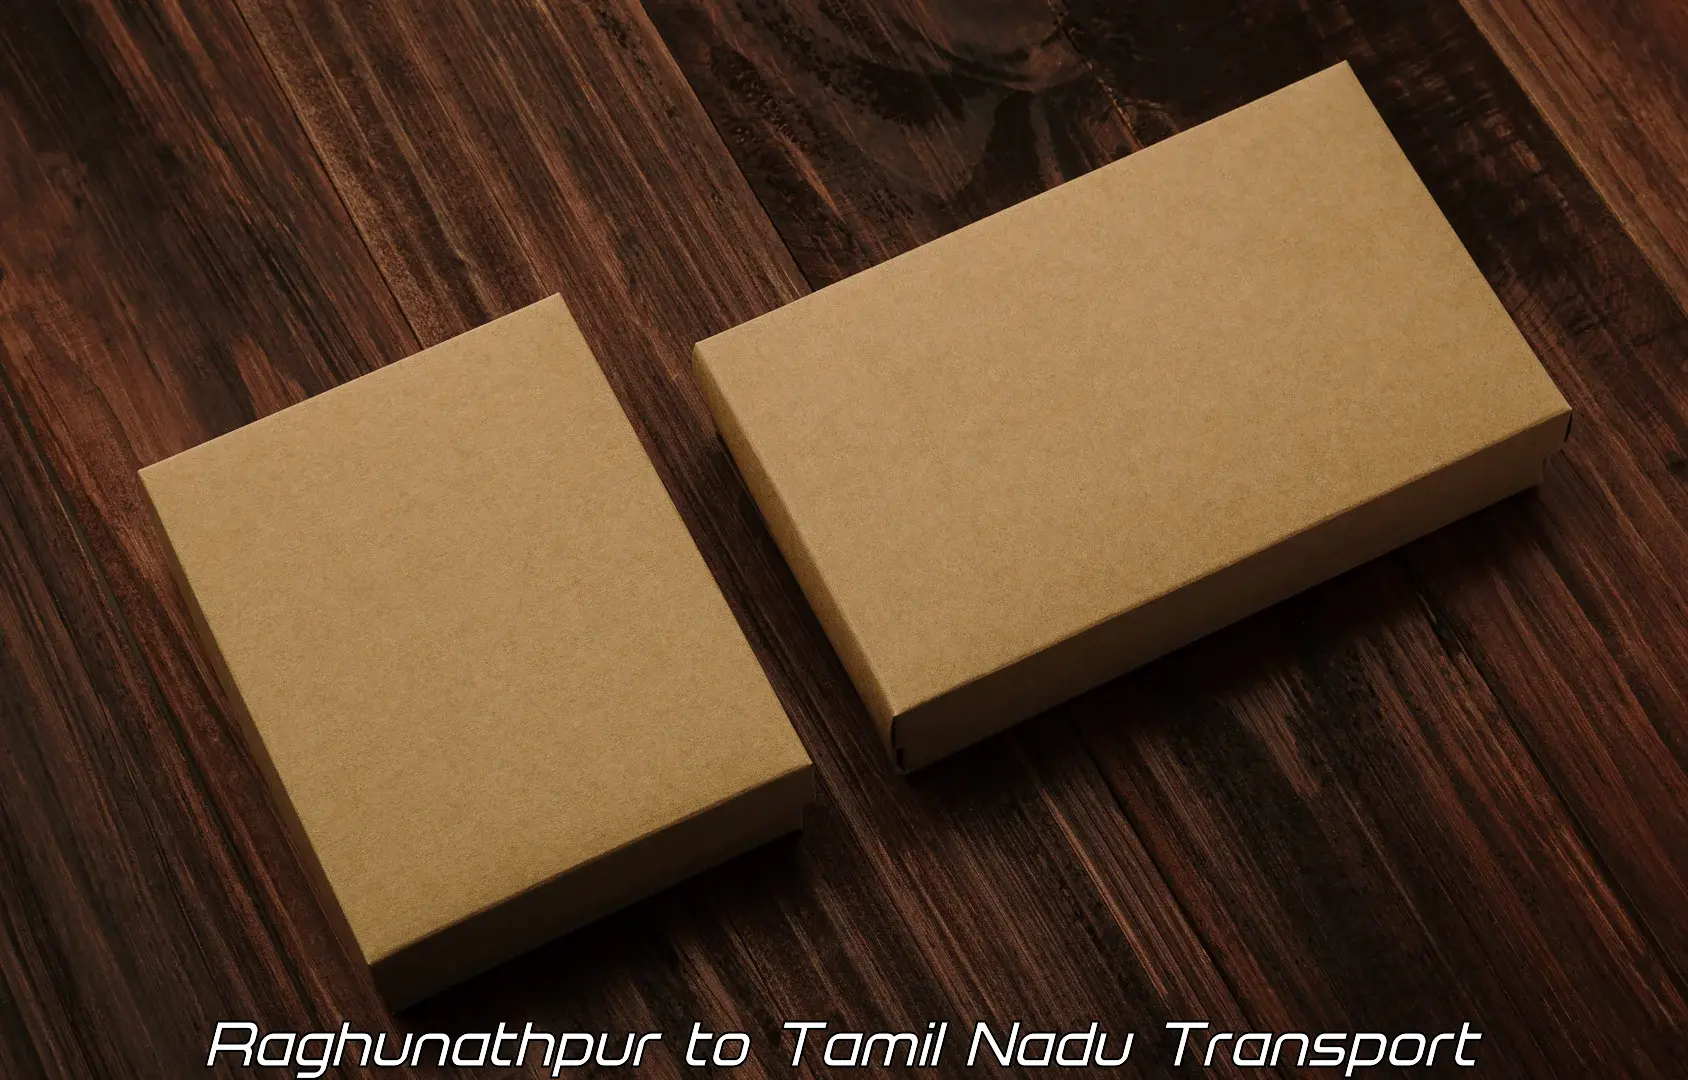 Online transport service Raghunathpur to Tiruturaipundi